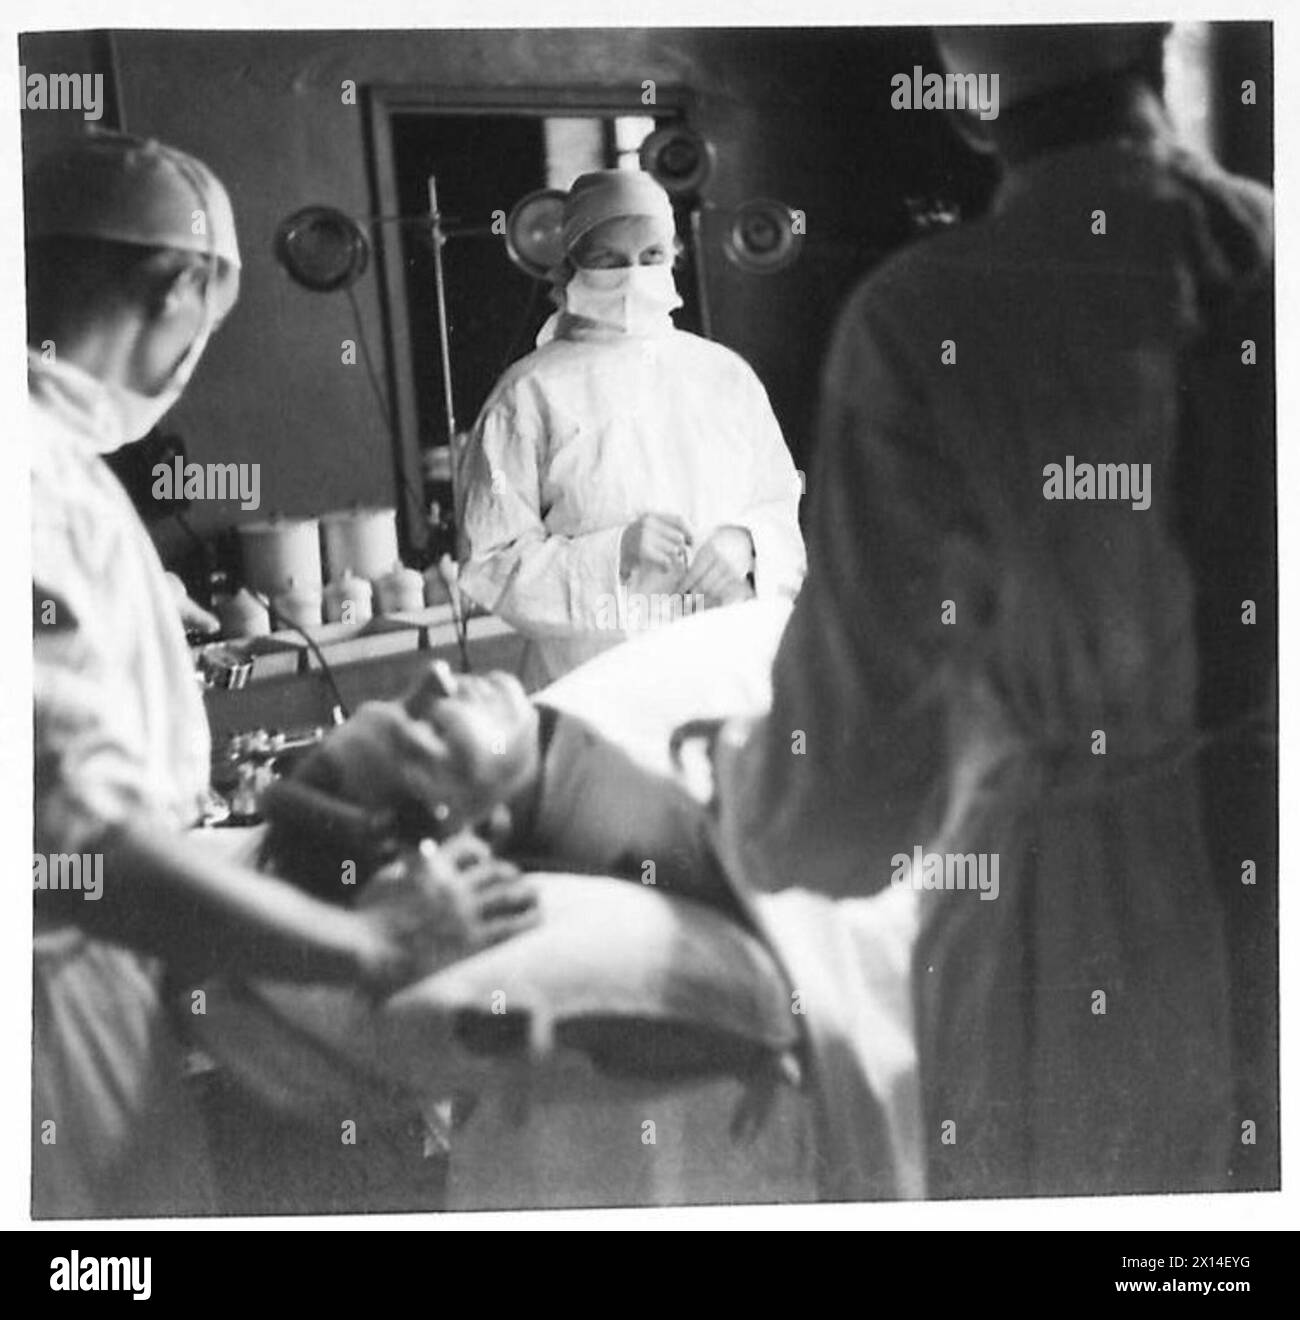 SUORE INFERMIERISTICHE AL LAVORO IN Un OSPEDALE NEL DESERTO - le suore hanno un compito importante nella sala operatoria nell'assistere i chirurghi British Army Foto Stock